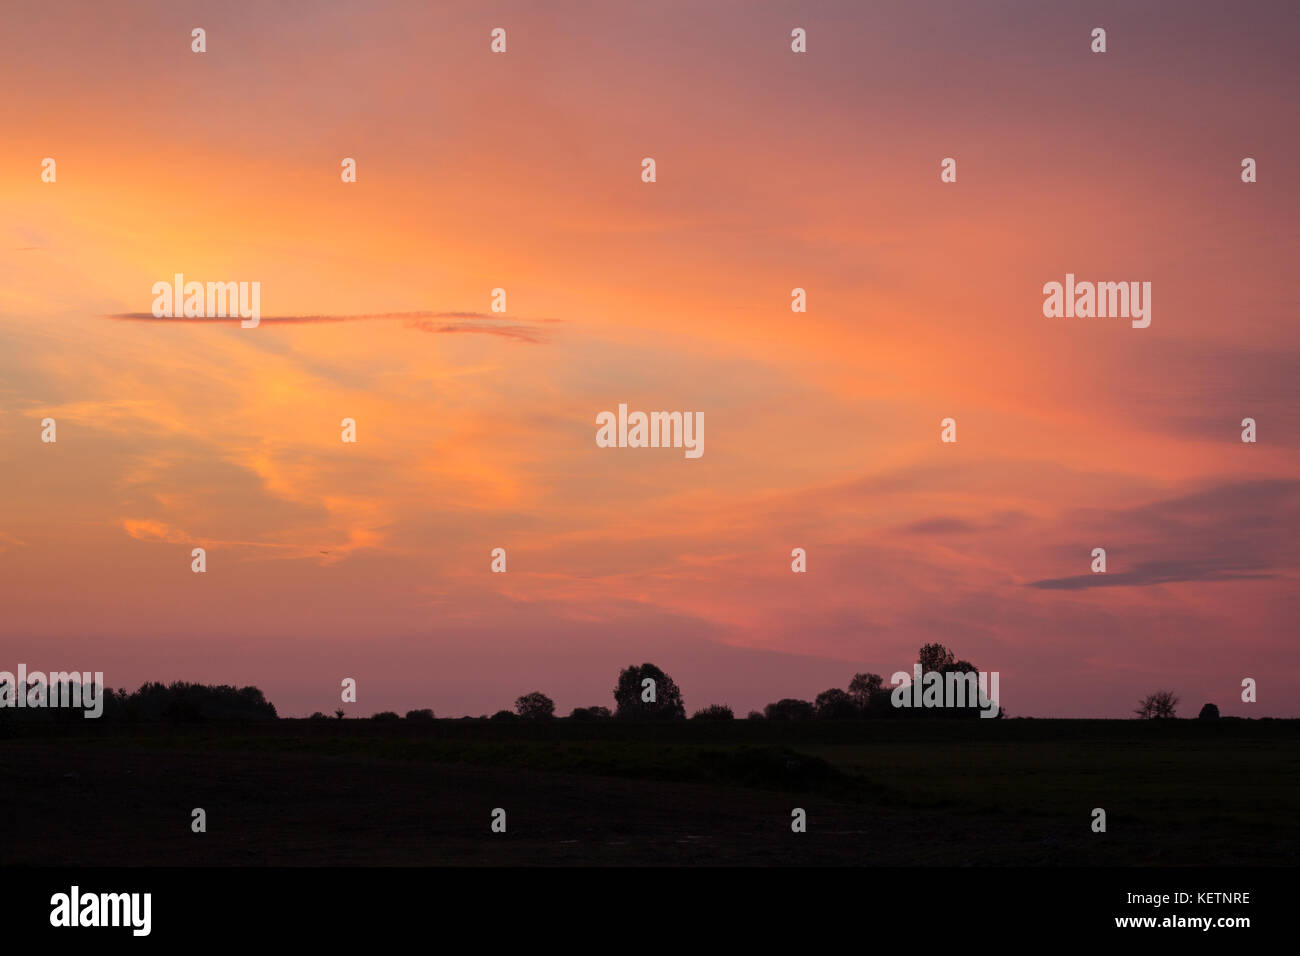 Dramatic sunset and sunrise sky Stock Photo